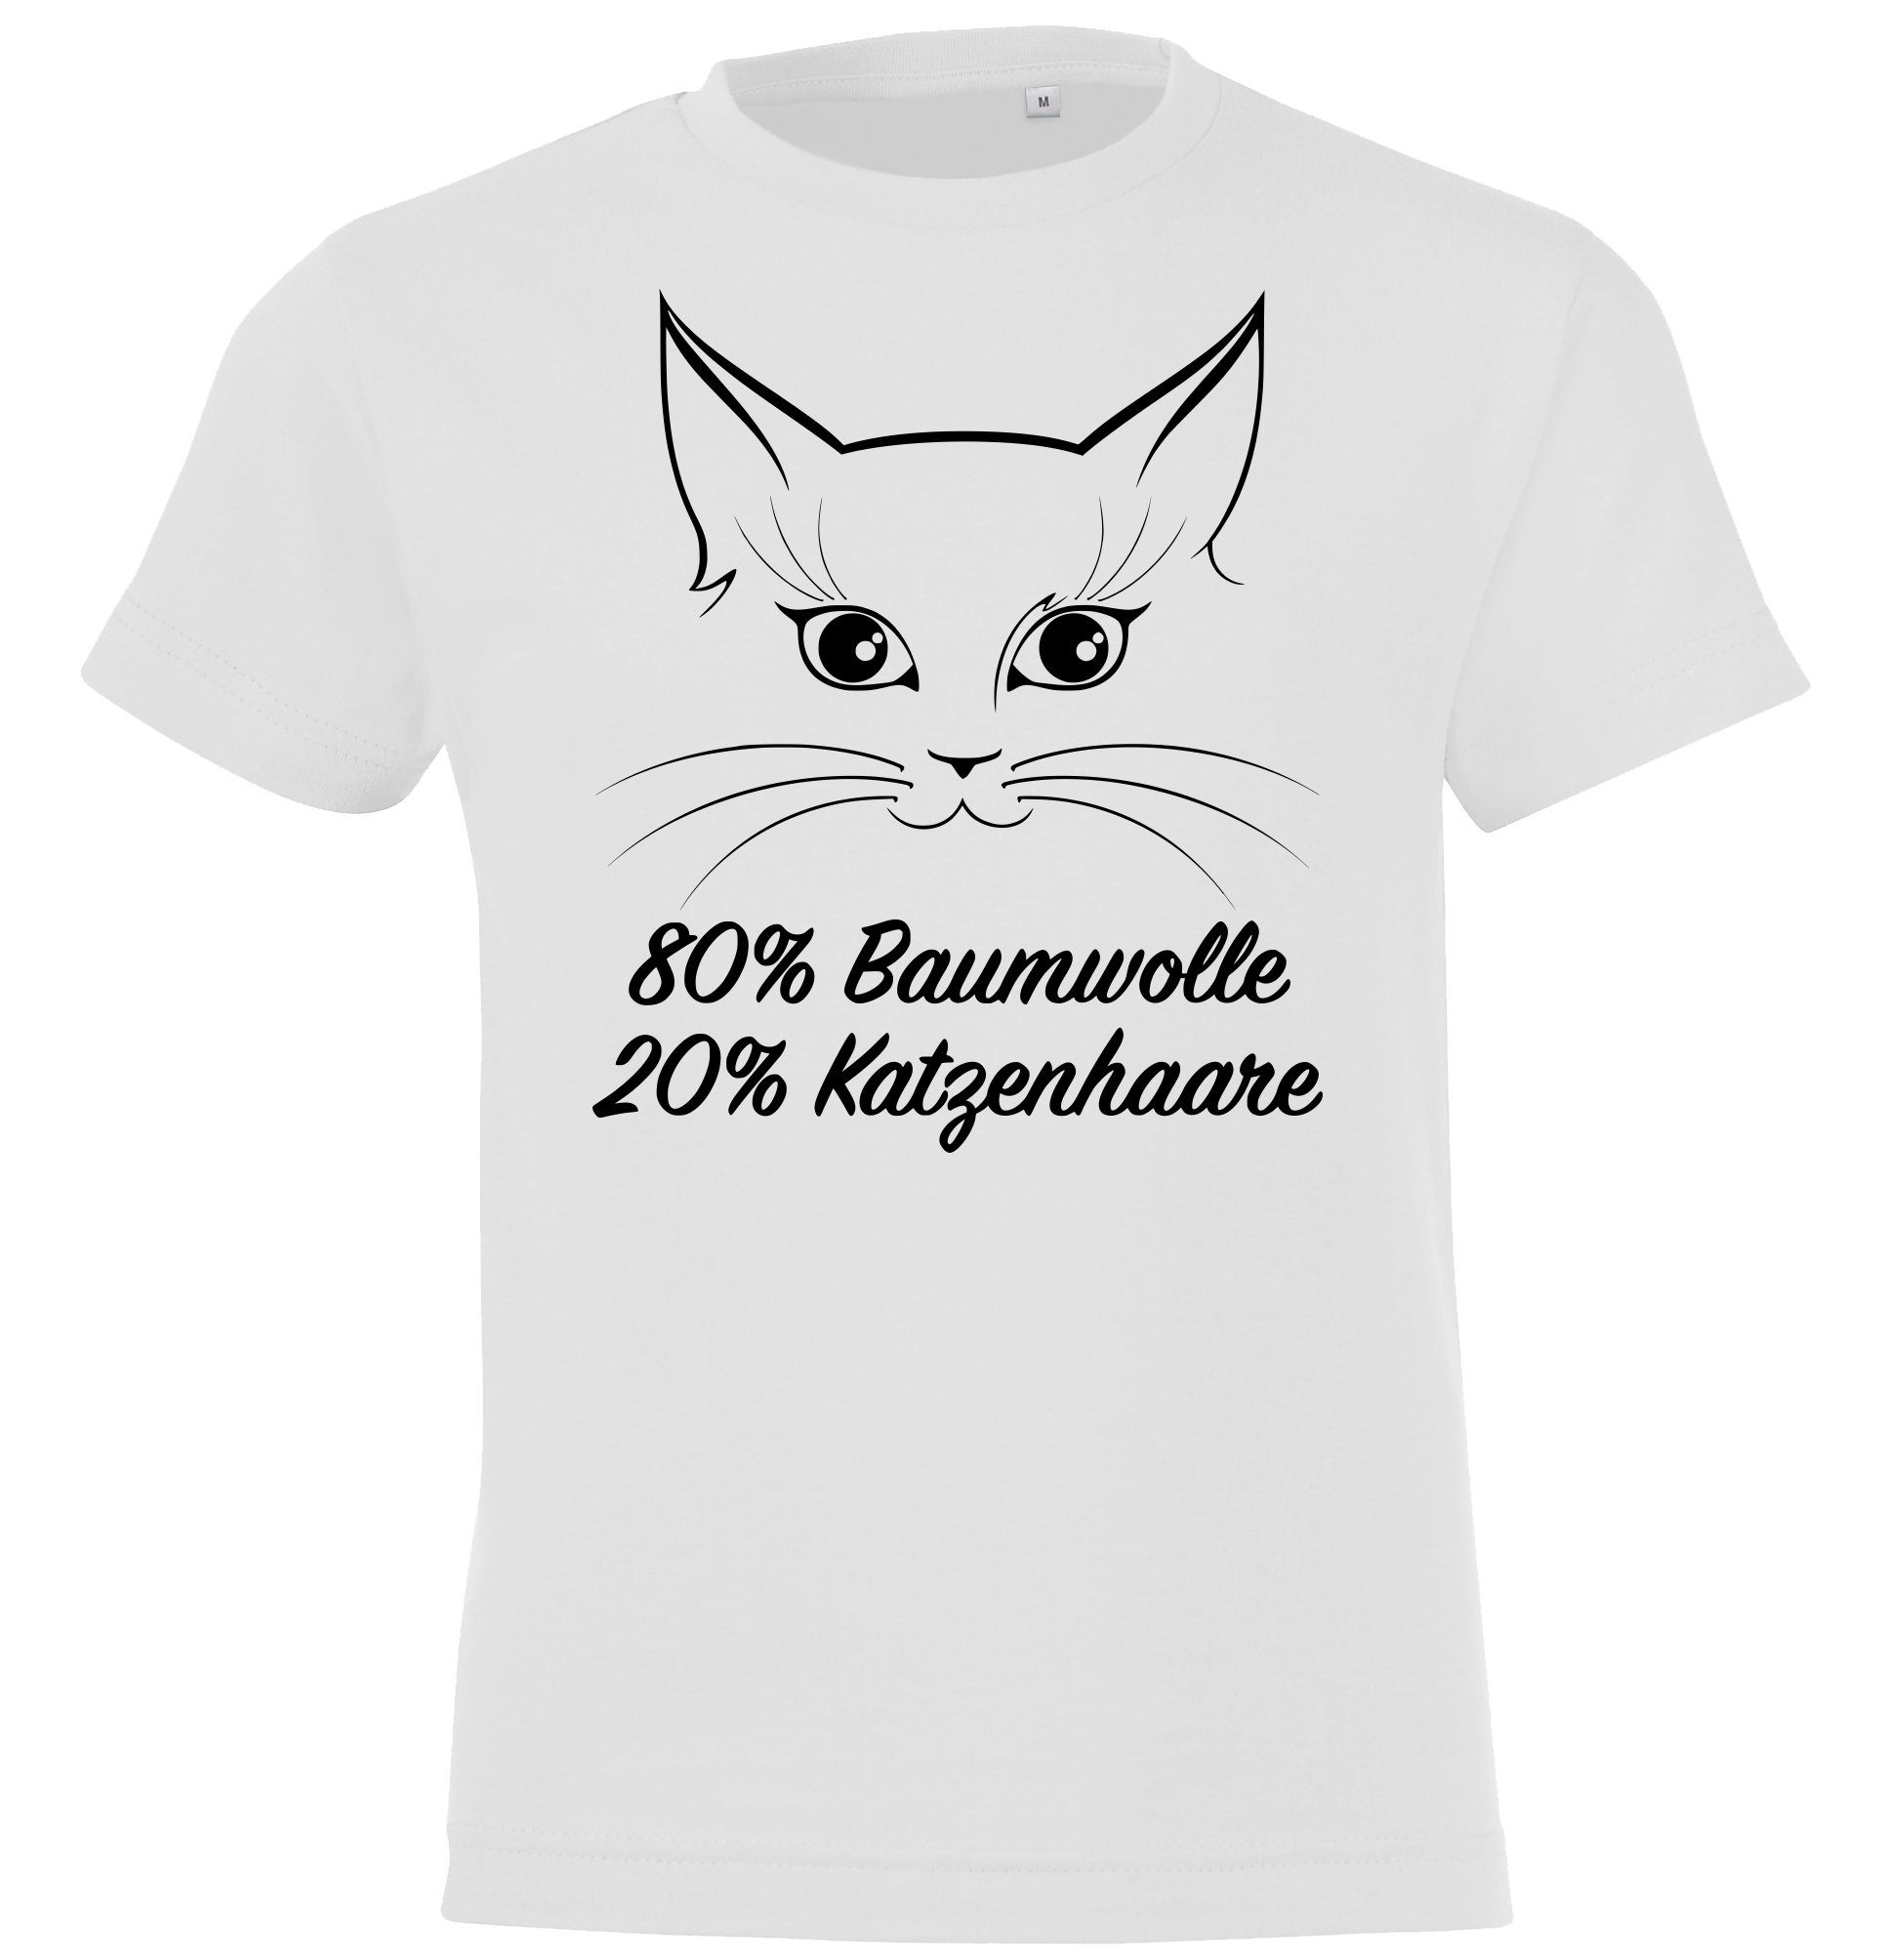 Spruch T-Shirt Katze mit lustigem Designz Youth Katzenhaare Weiß Kinder Shirt Aufdruck